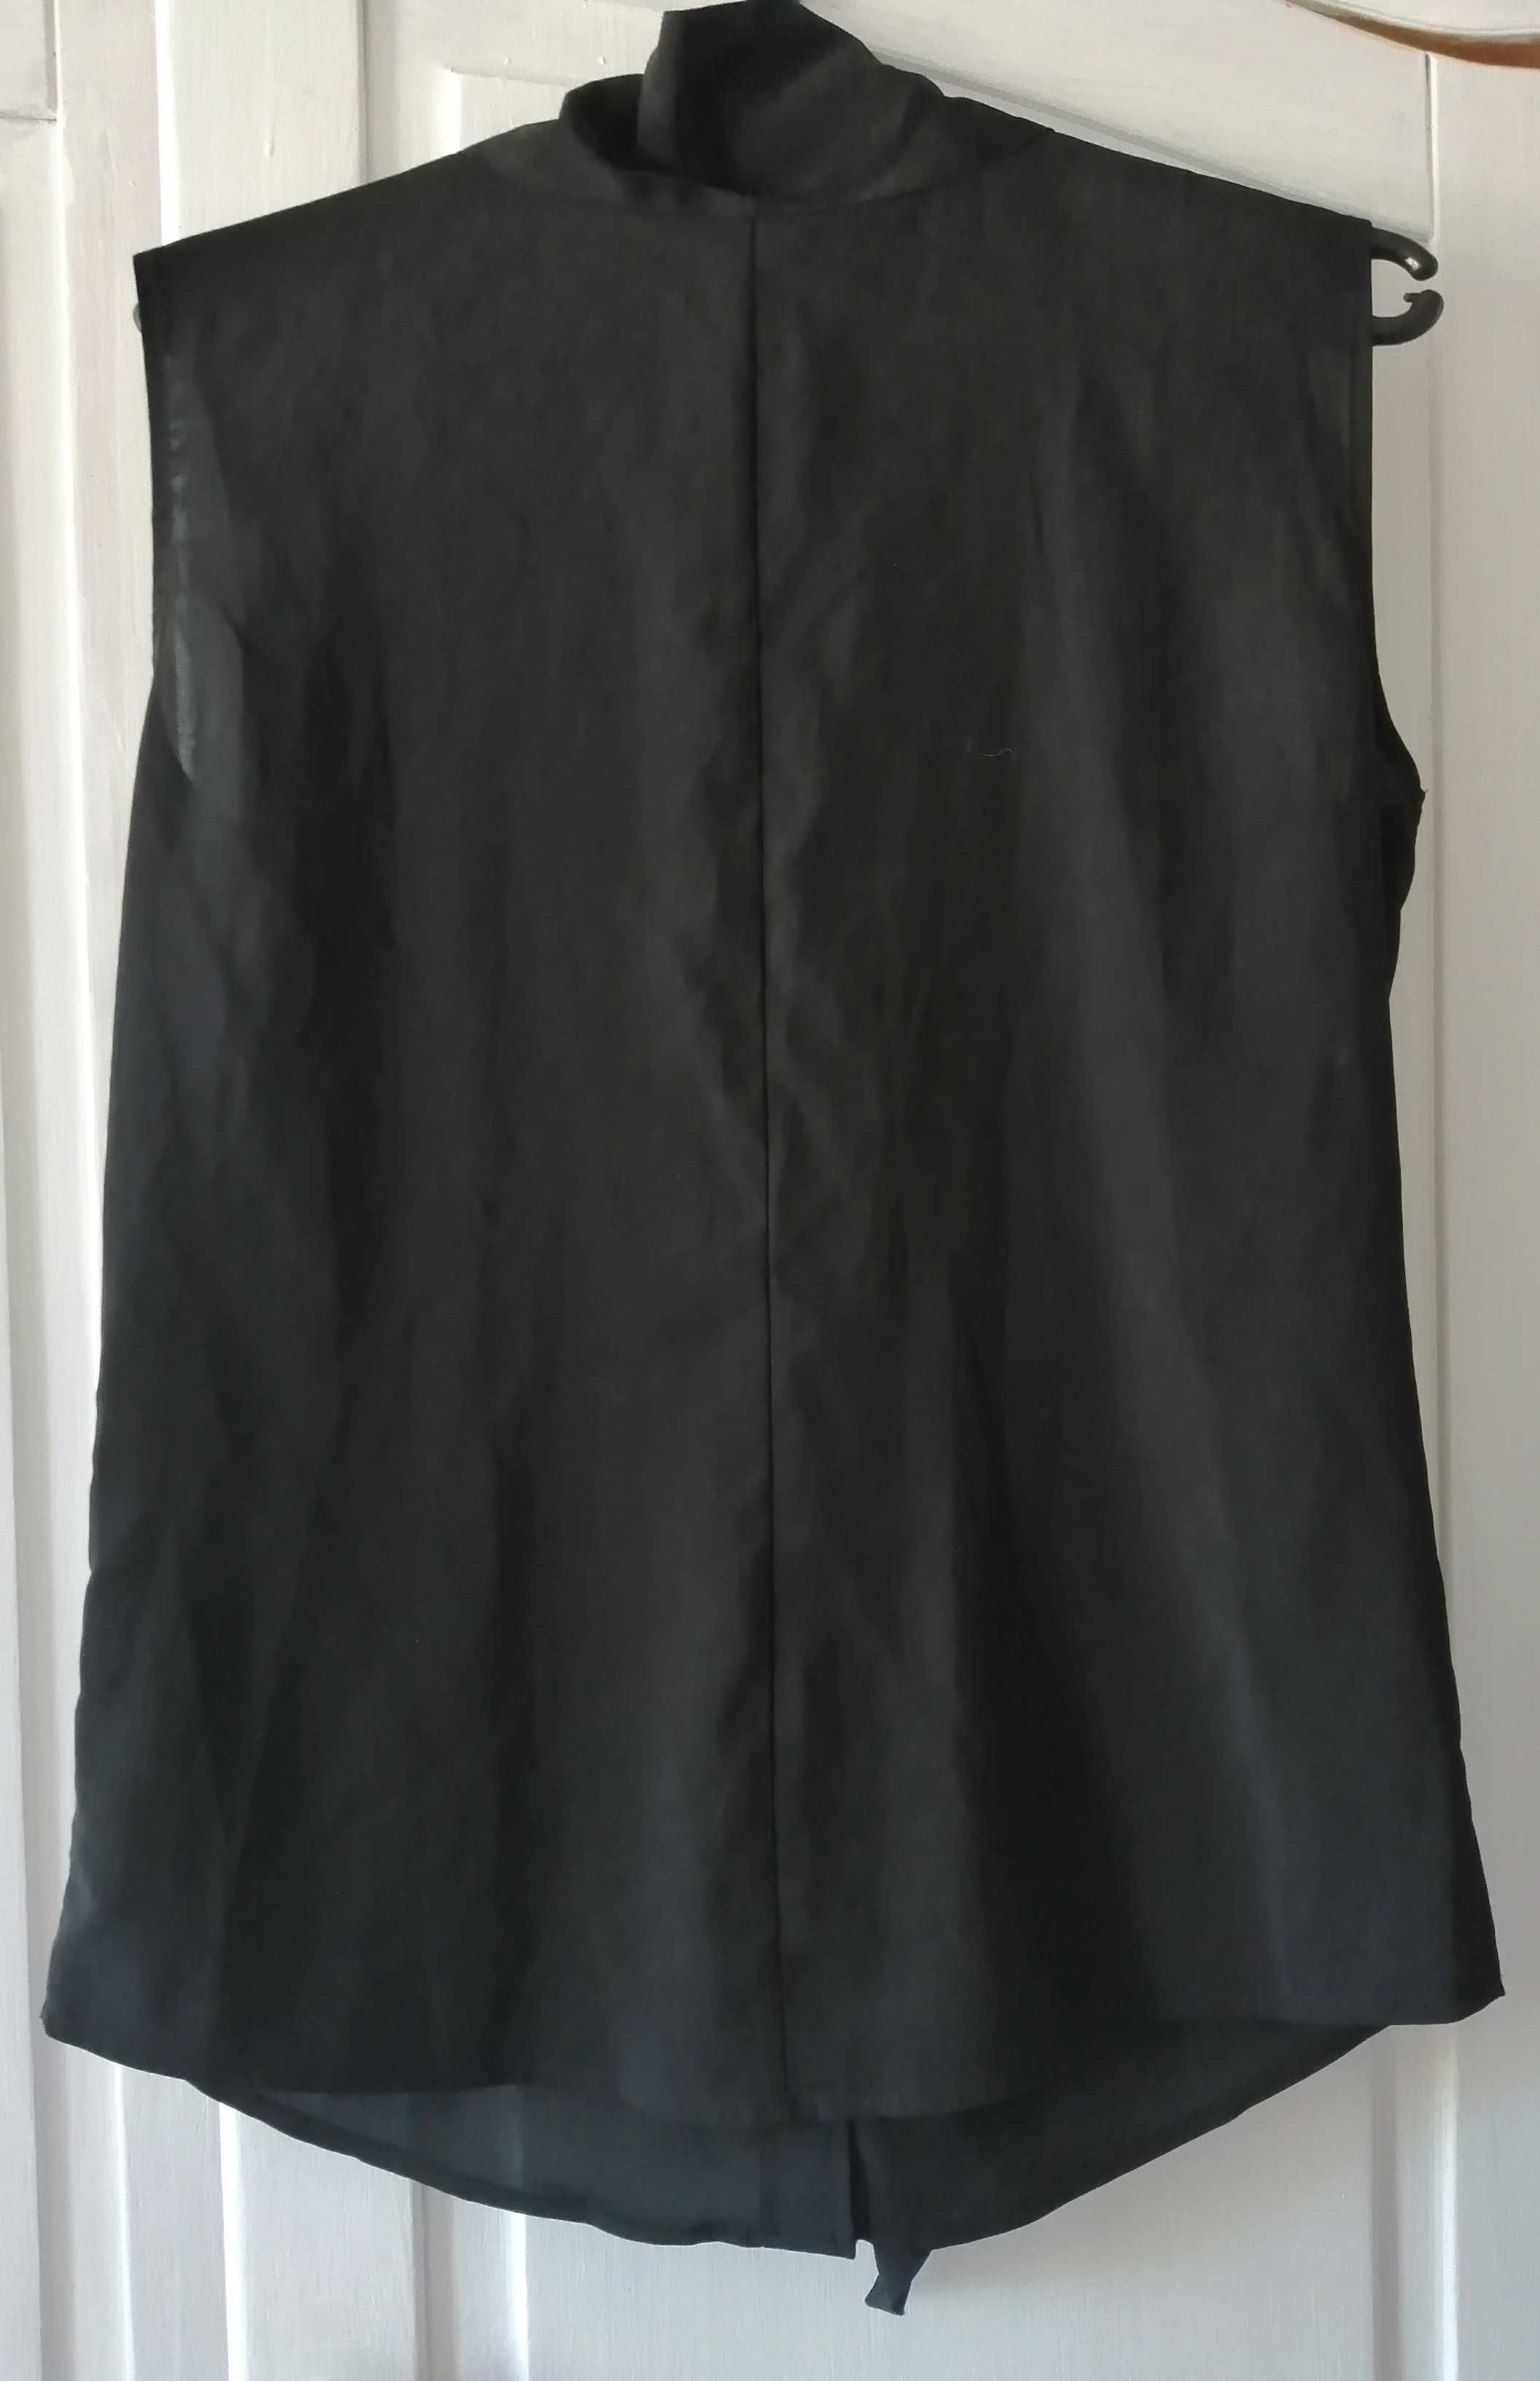 damska bluzka wizytowa czarna bez rękawów marka Calvin Klein rozmiar S